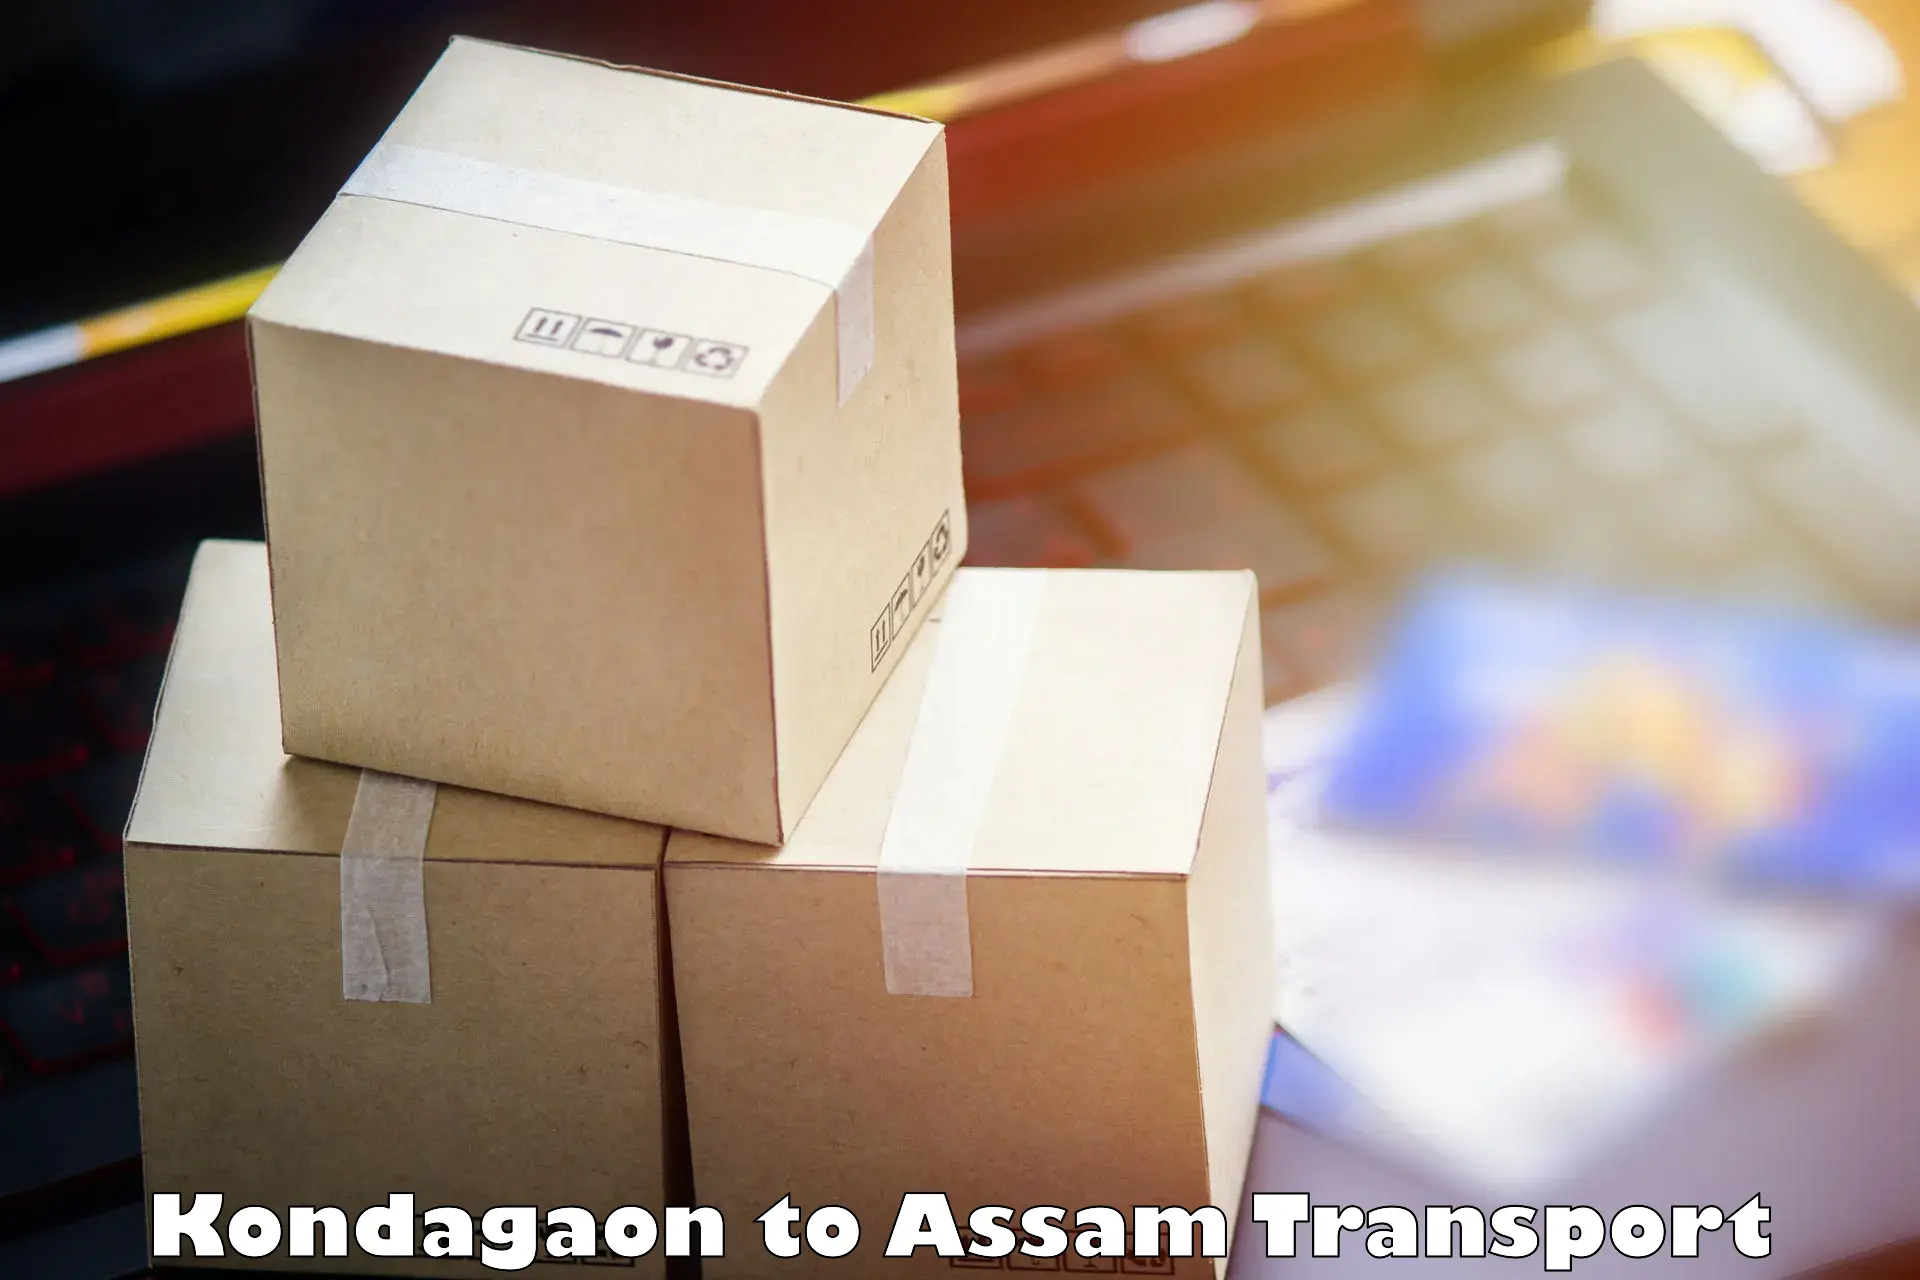 Two wheeler parcel service Kondagaon to Mangaldoi